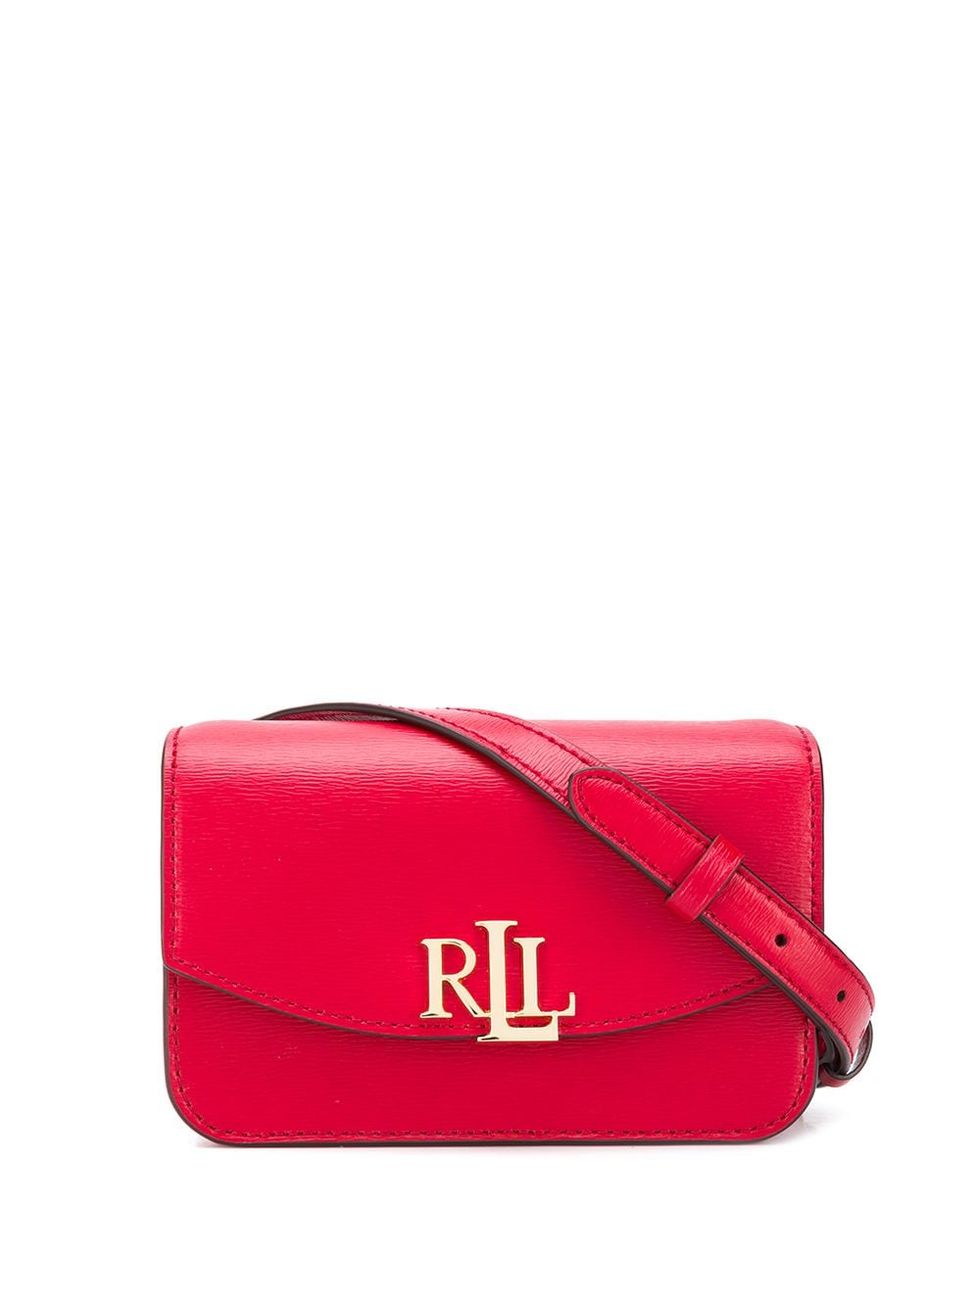 Lauren Ralph Lauren 紅色斜背包